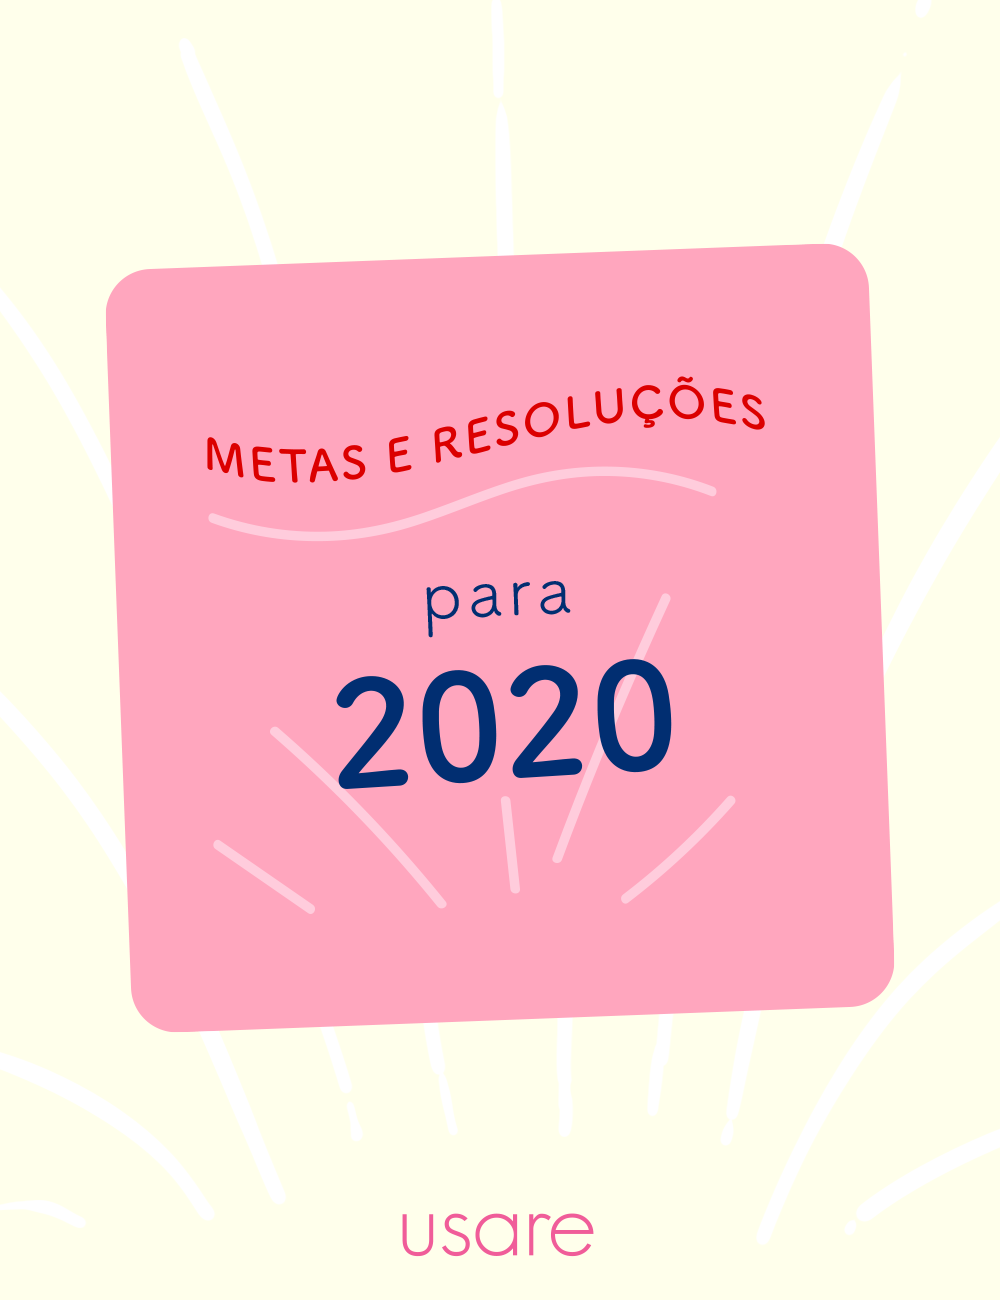 Metas e resoluções para 2020